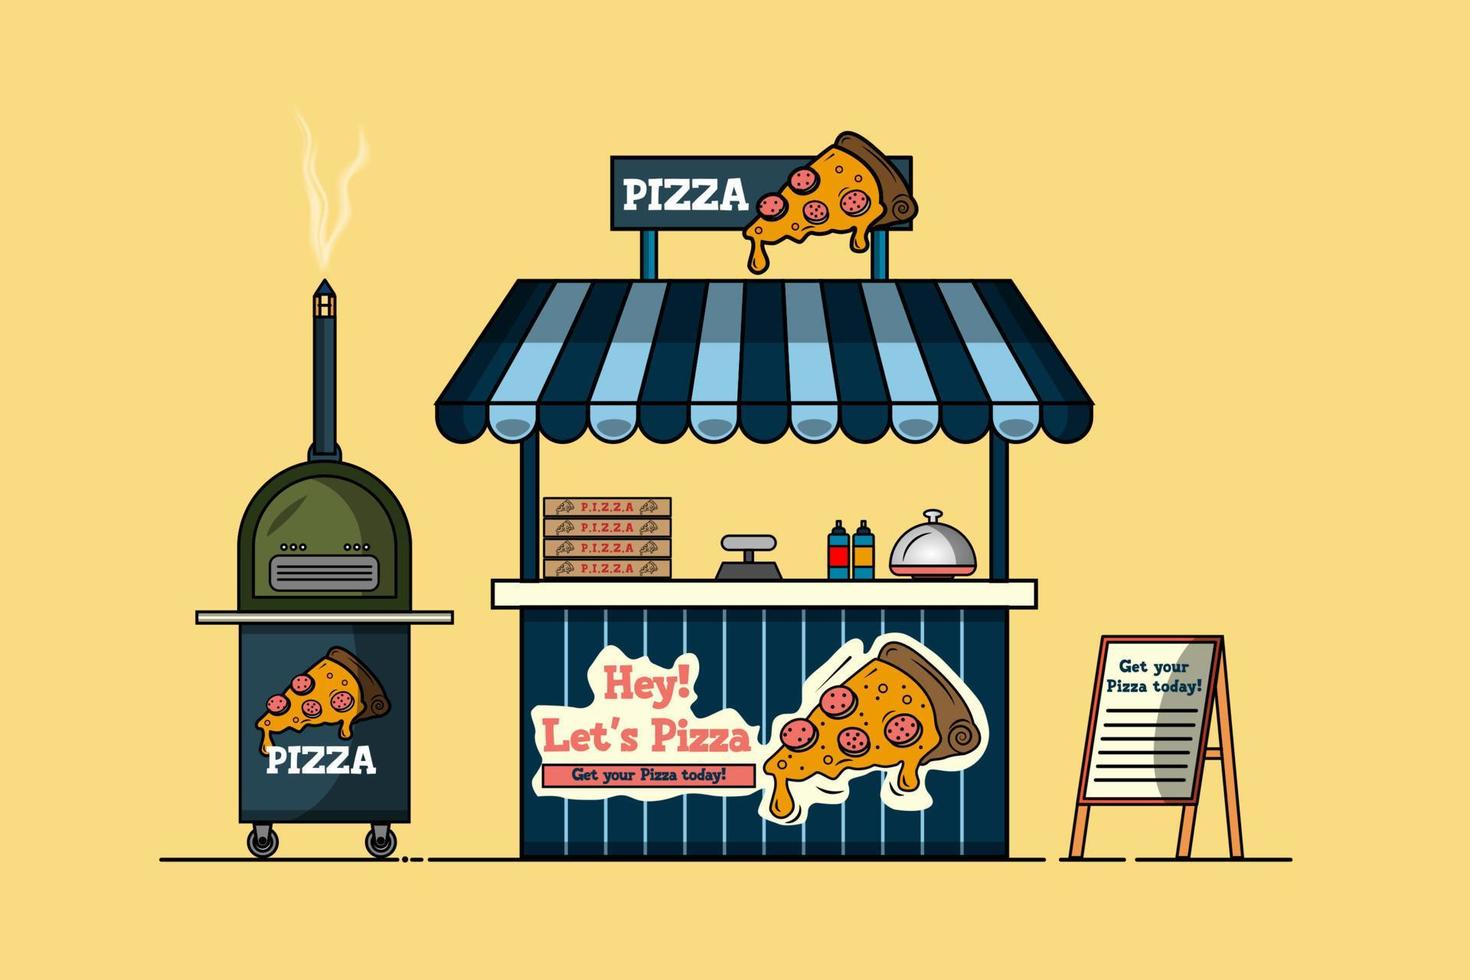 Flat carton style outdoor pizza kiosk vector